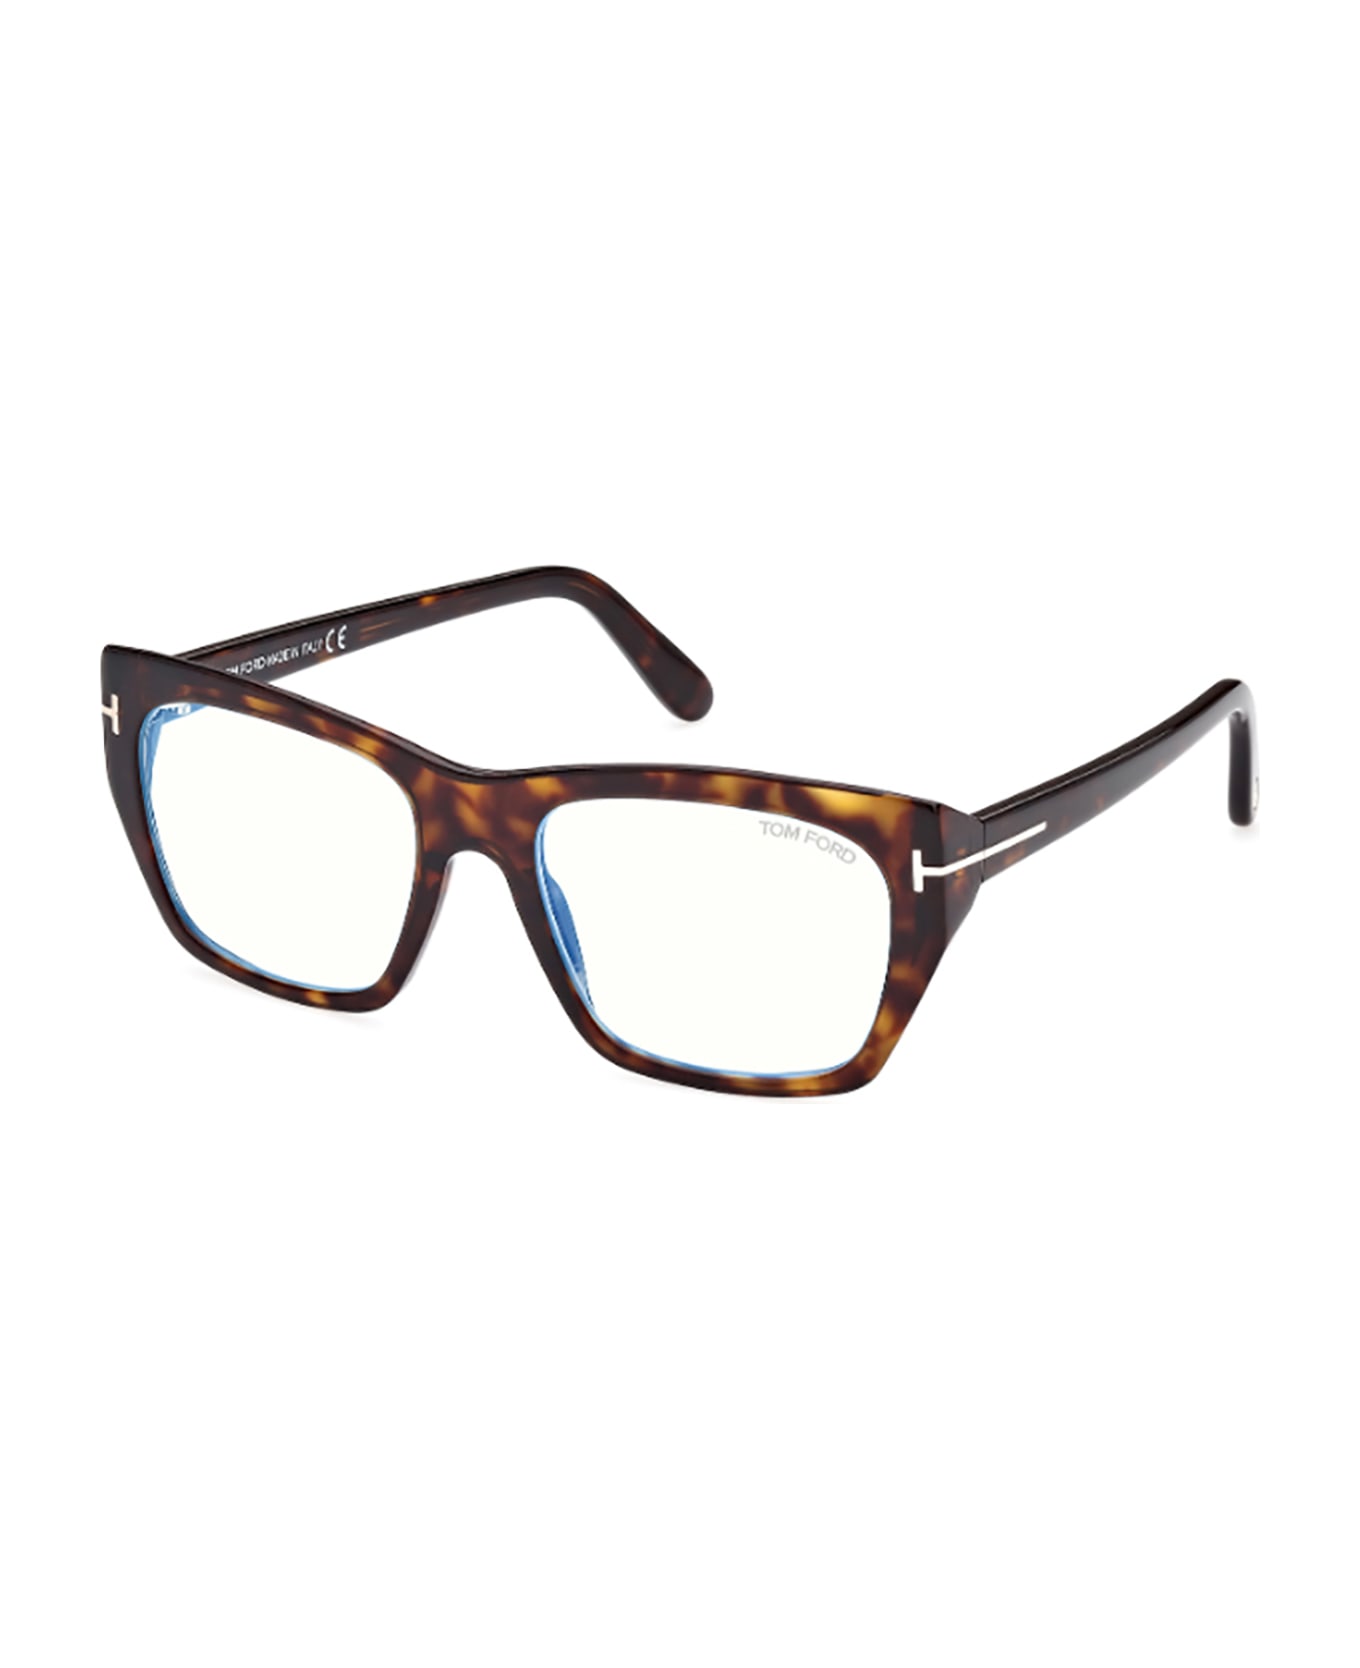 Tom Ford Eyewear FT5846/B Eyewear